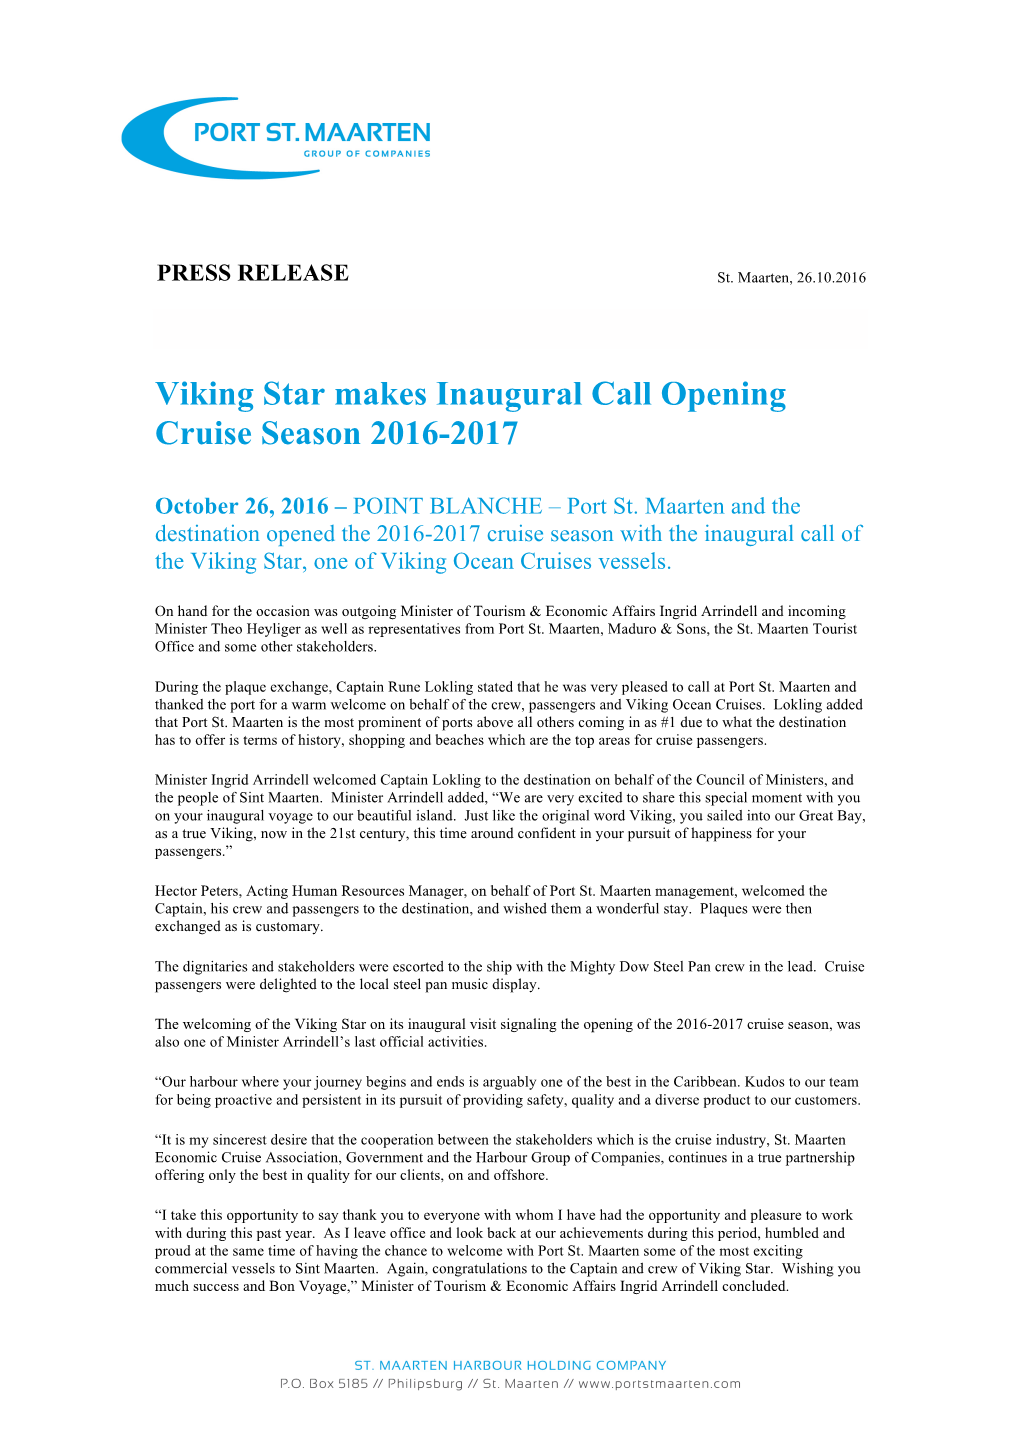 Viking Star Makes Inaugural Call Opening Cruise Season 2016-2017